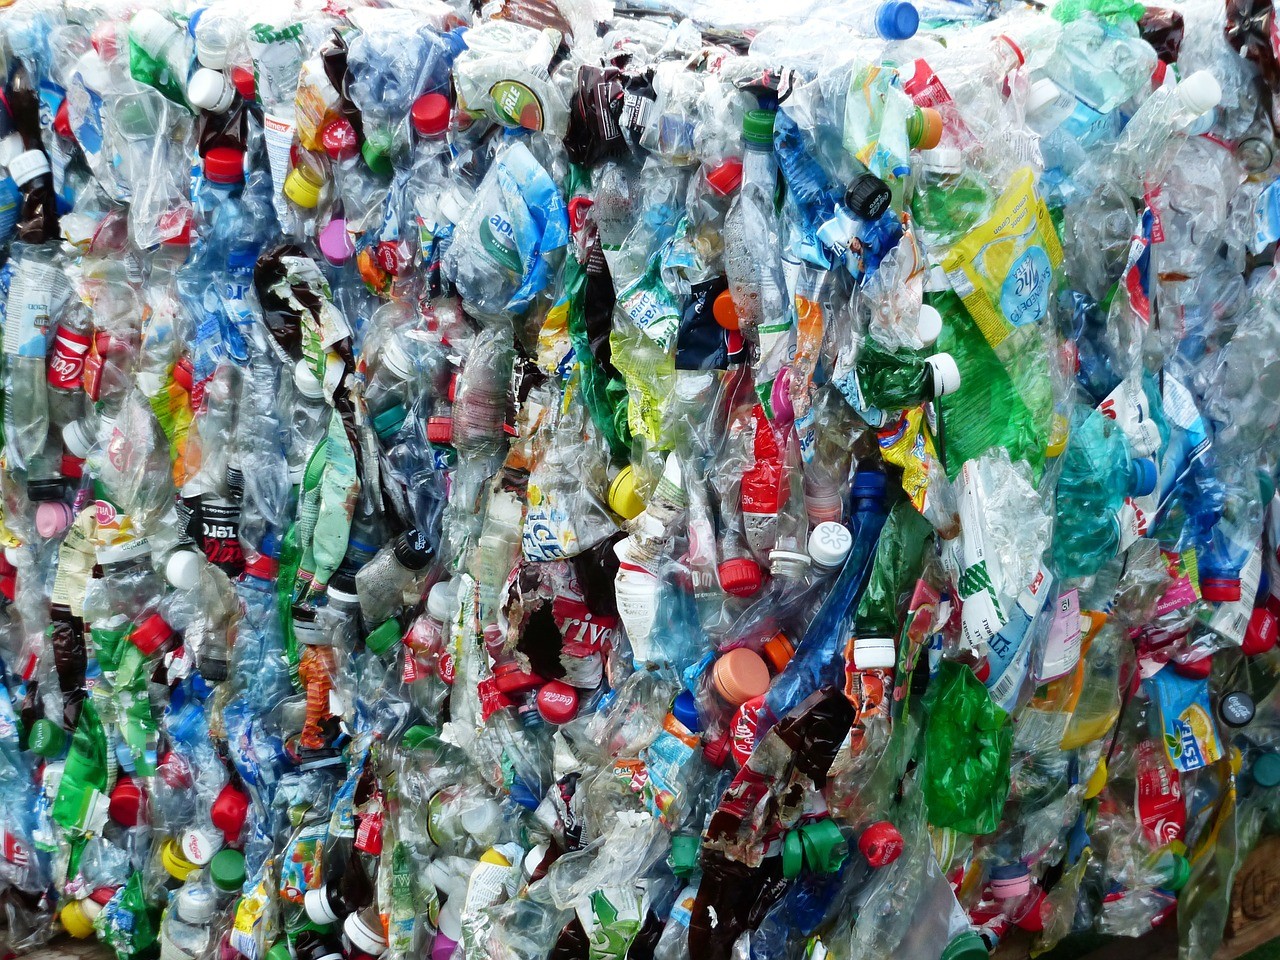 Plastikowe odpady to ogromny problem dla naszej planety - musimy zrobi wszystko, by zminimalizować ich zużycie